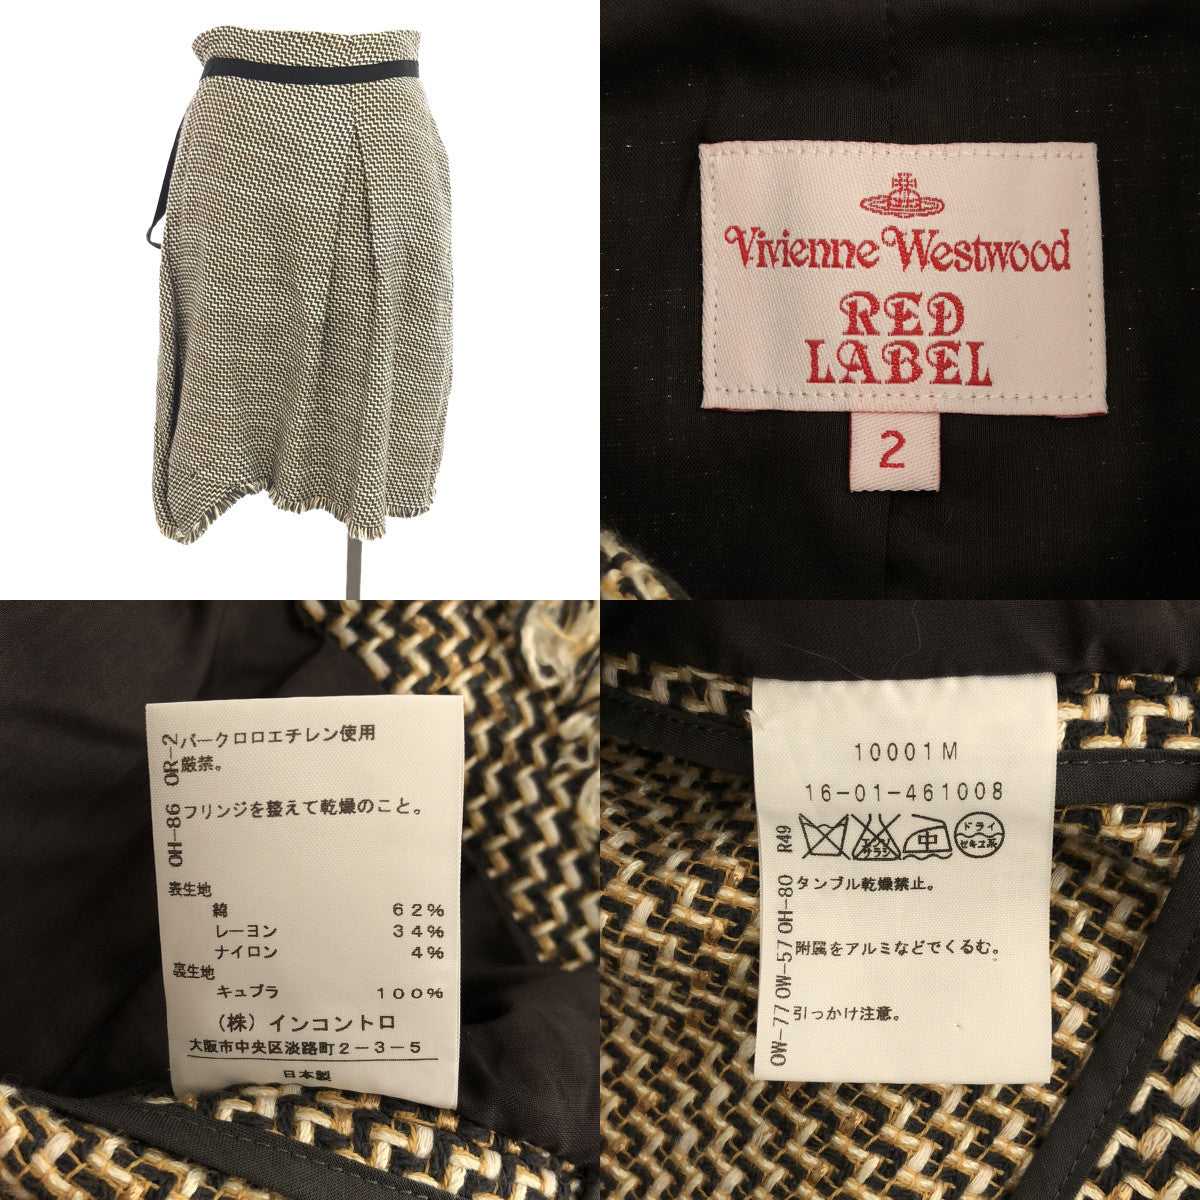 VIVIENNE WESTWOOD RED LABEL / ヴィヴィアンウエストウッドレッドレーベル | セットアップ オーブボタン  ツイードジャケット スカート | 2 | レディース